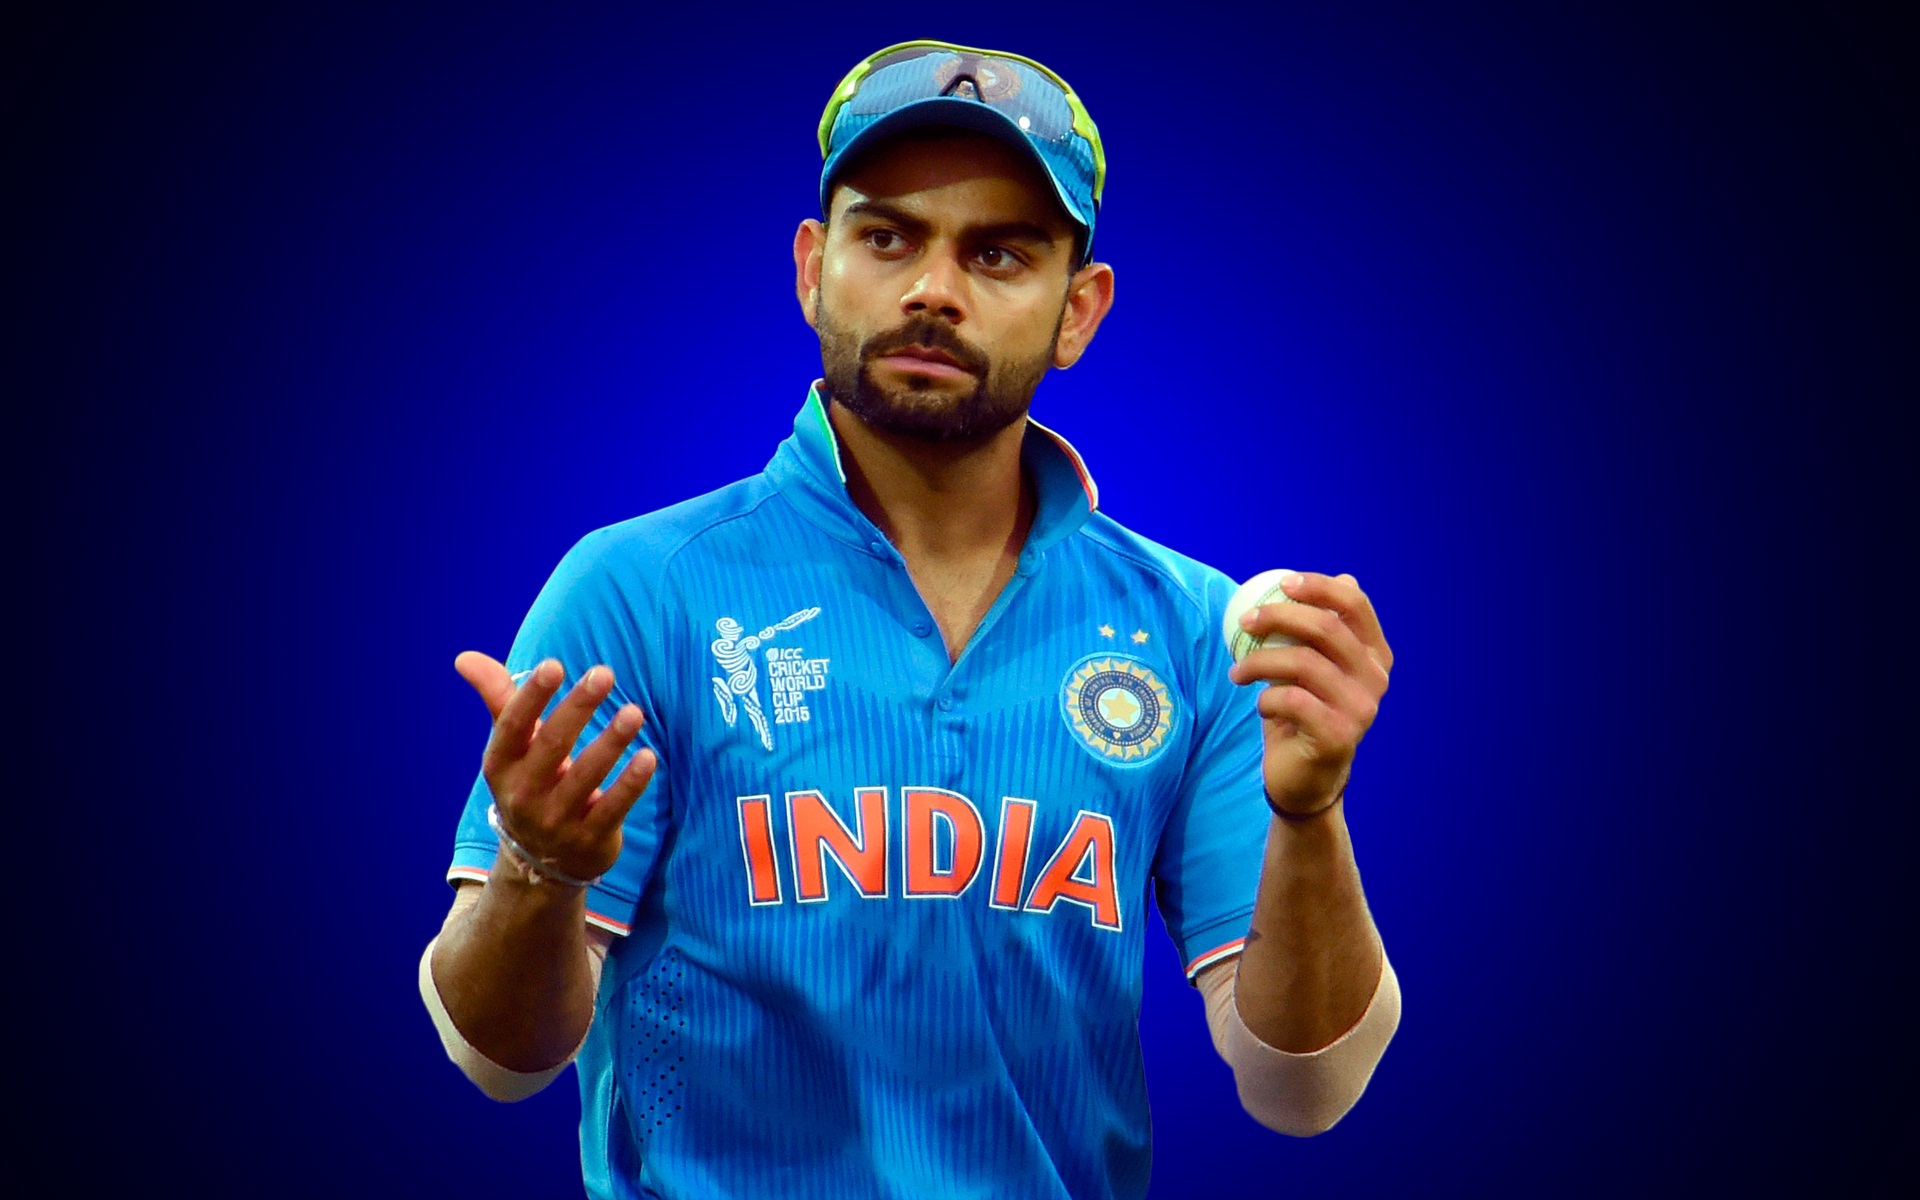 kohli-hd-Images-Indian-Cricket-Super-Star